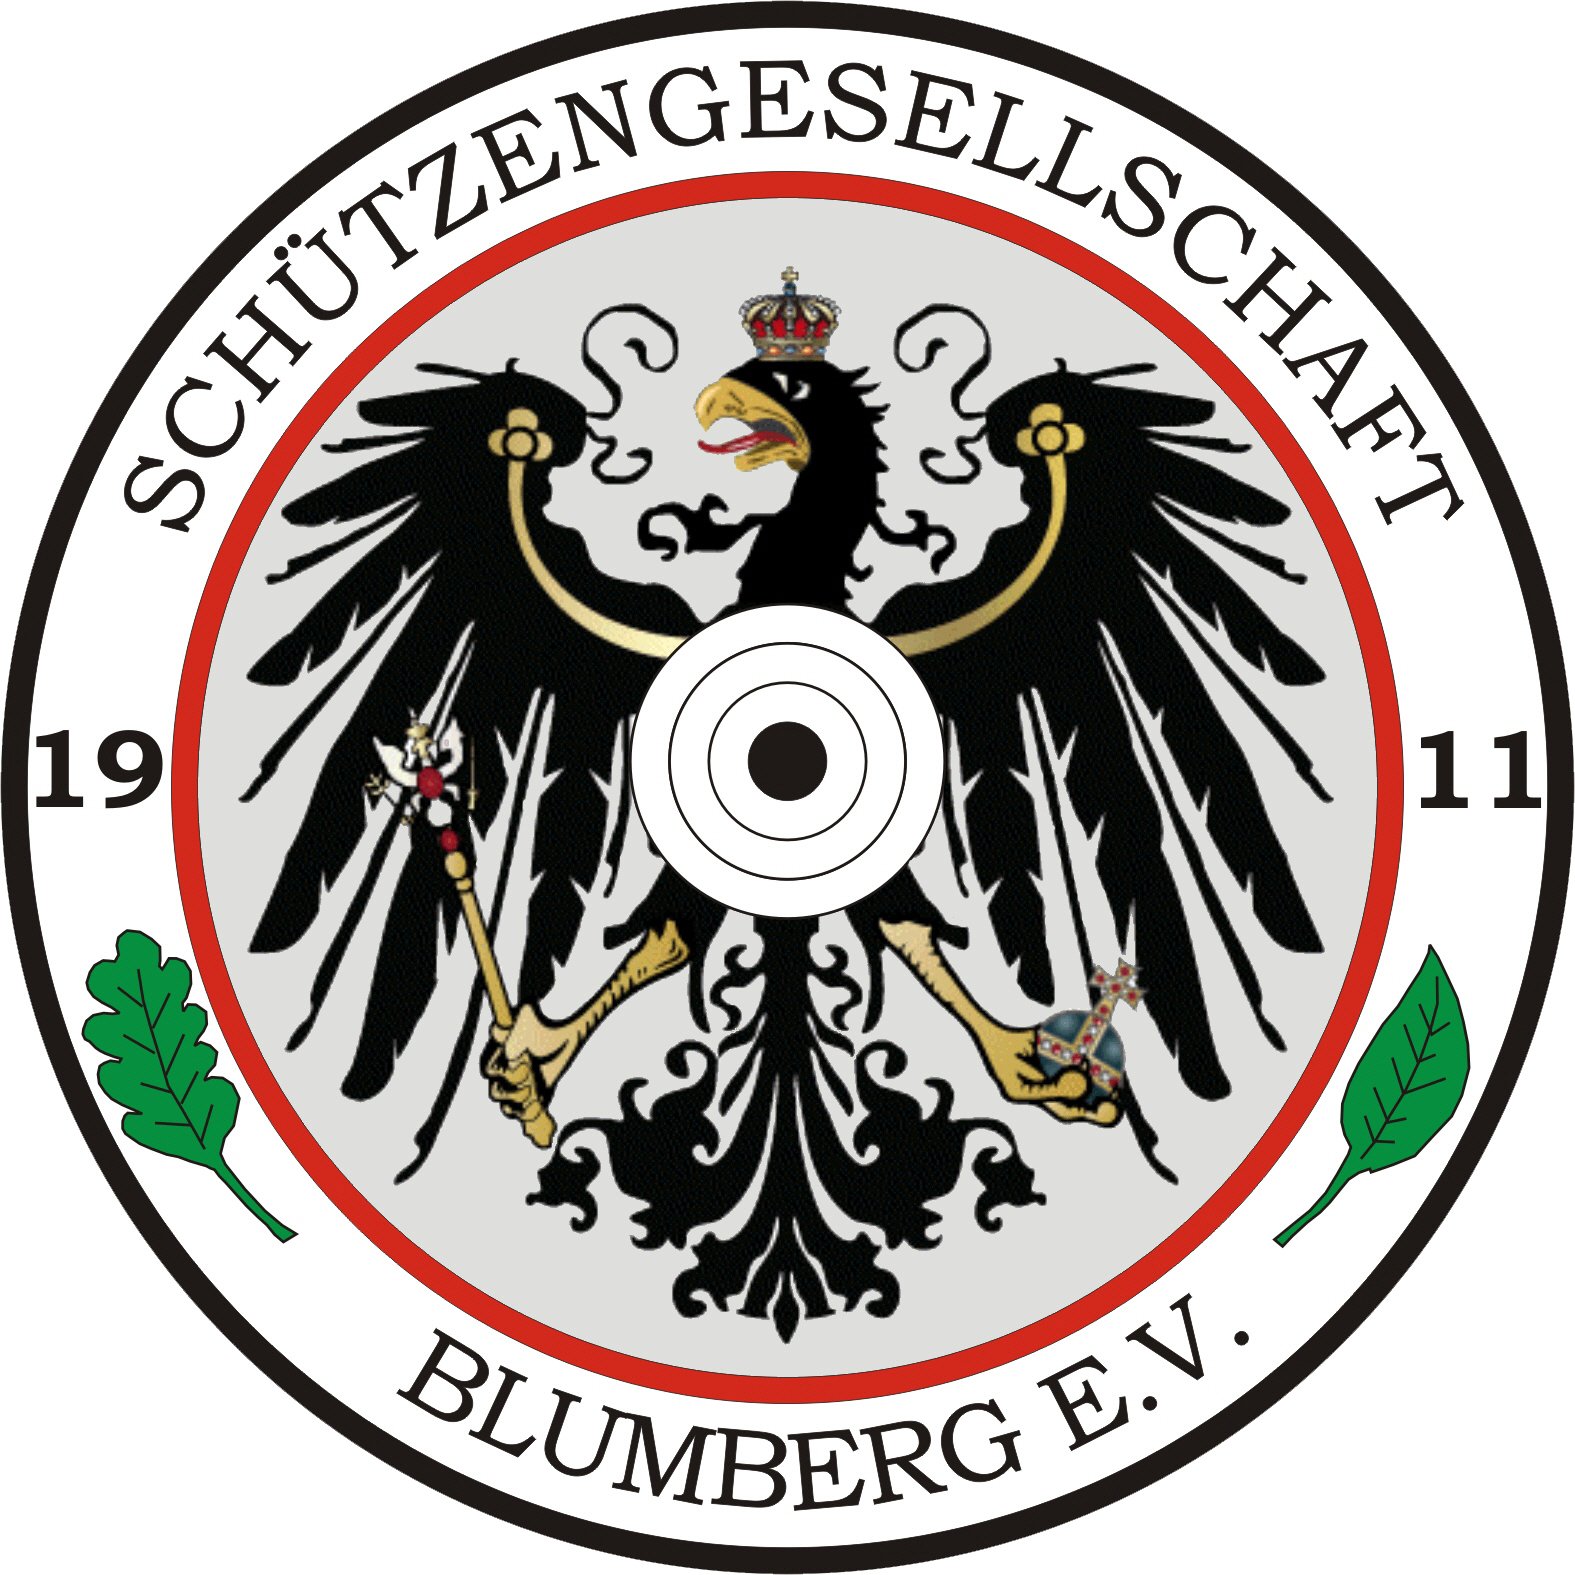 (c) Sg-blumberg.de